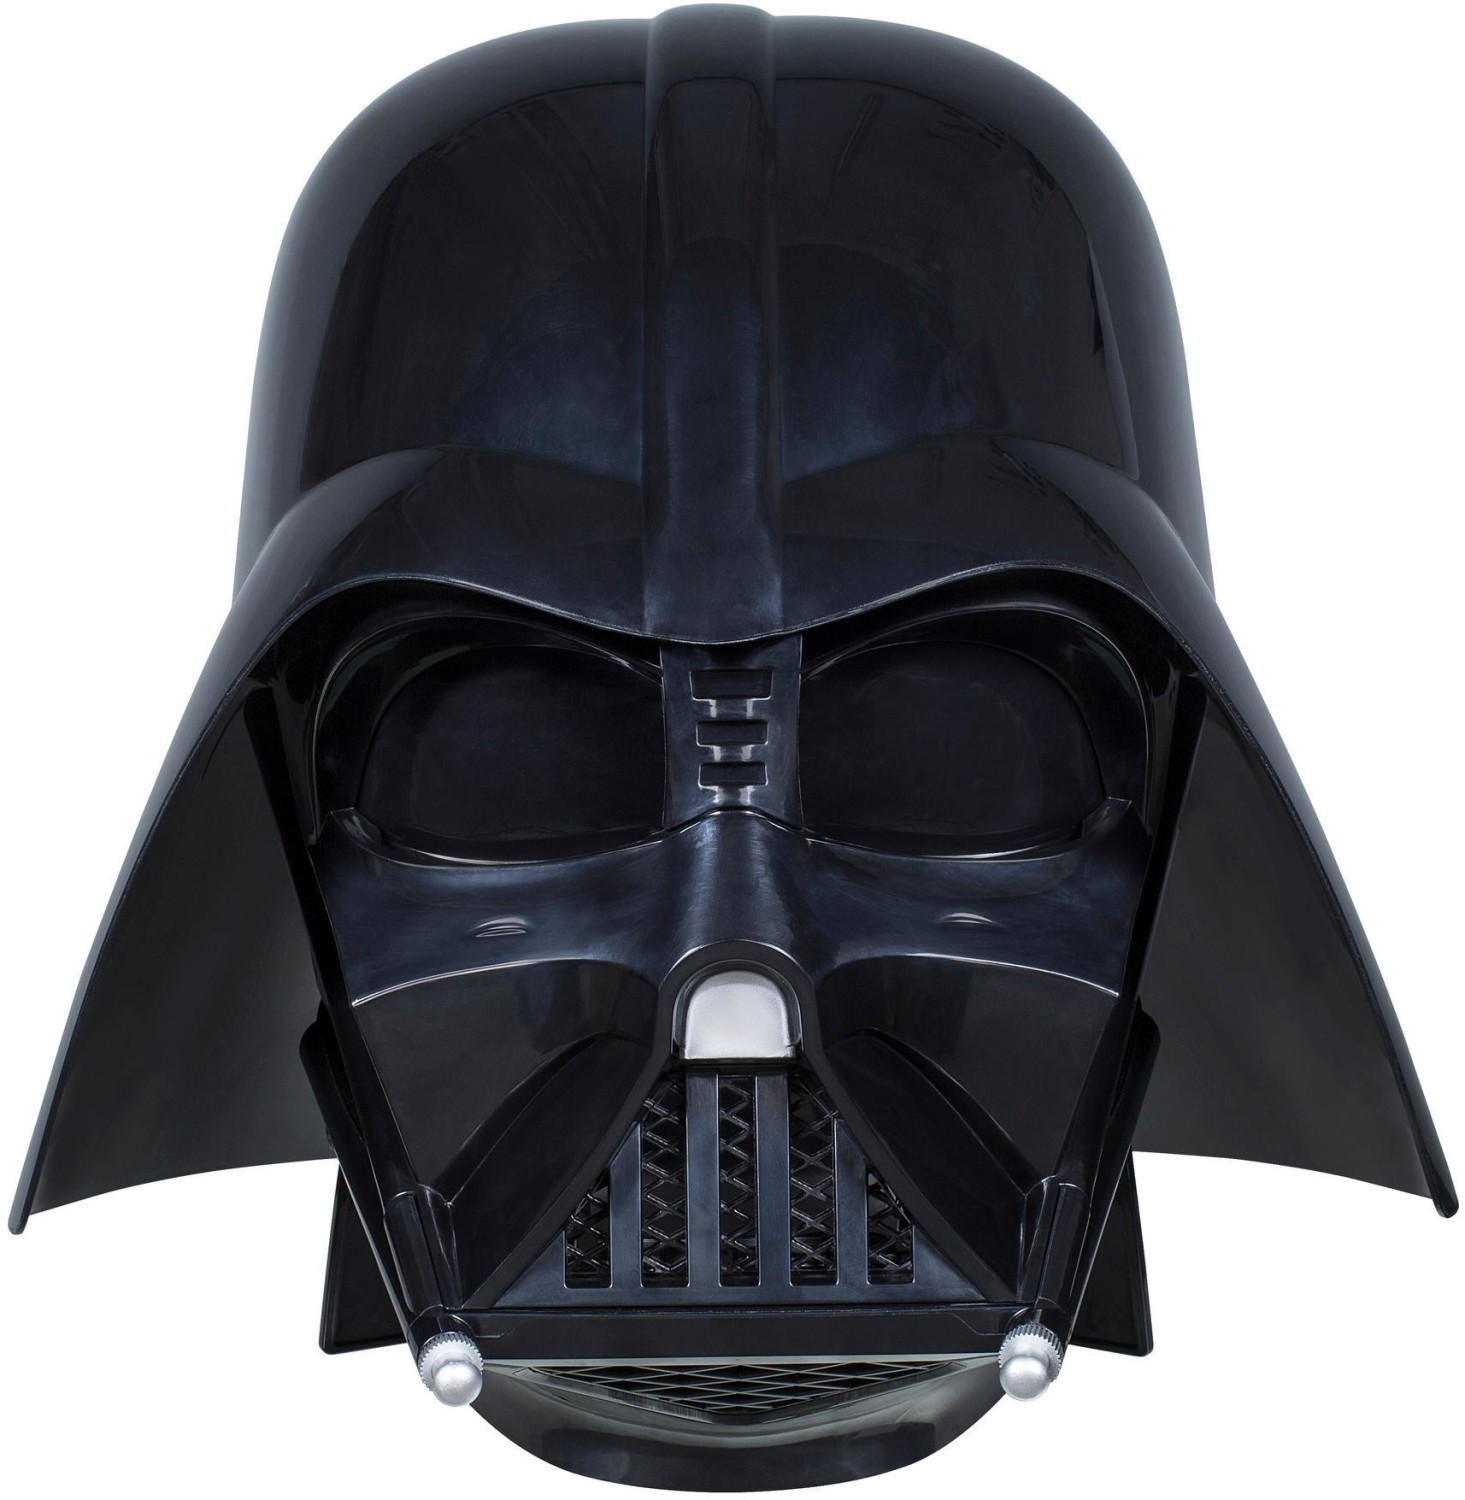 Hasbro Star Wars Darth Vader Helm